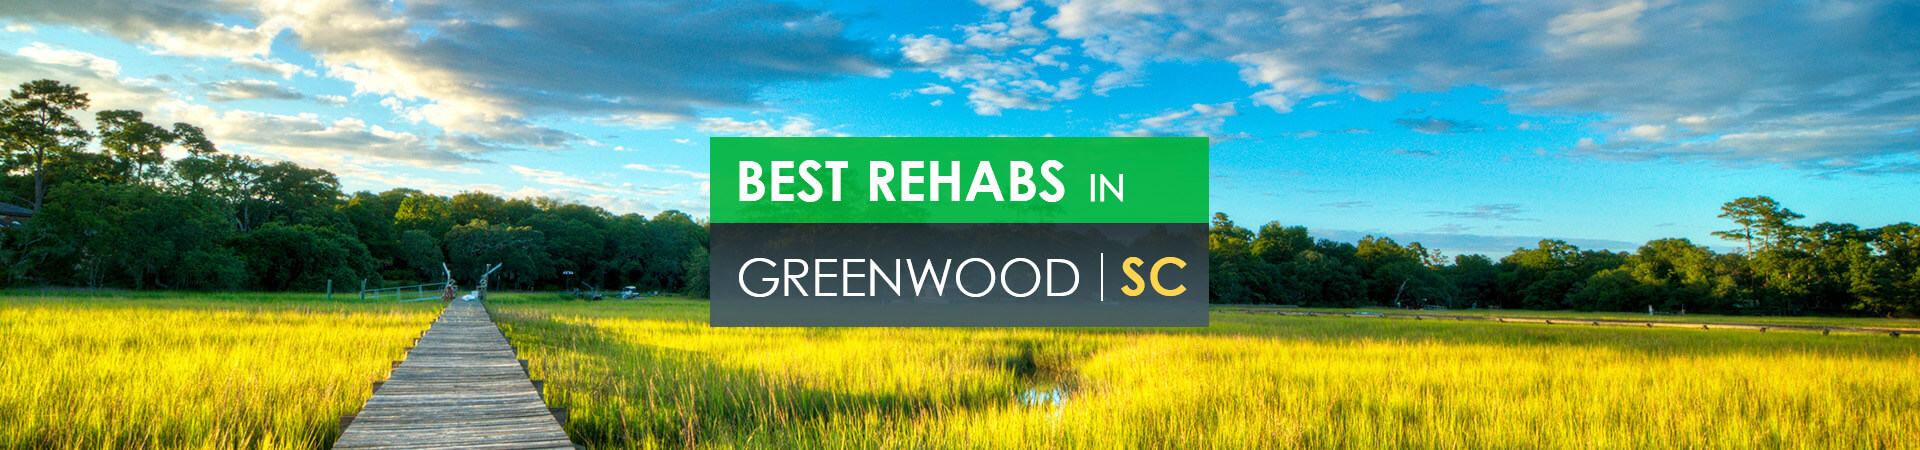 Best rehabs in Greenwood, SC